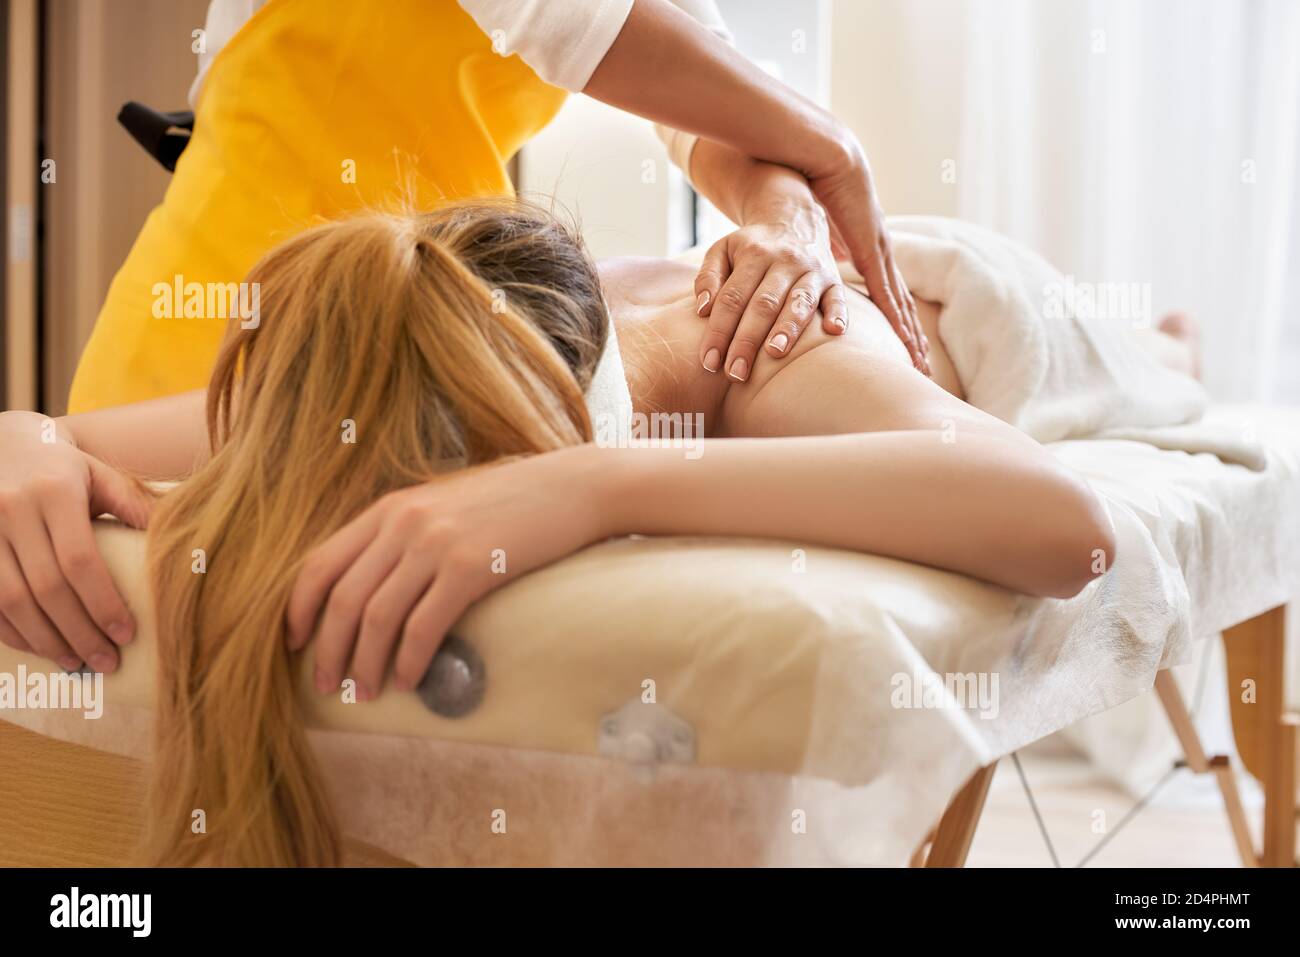 Junge Frau erhält eine Rückenmassage in einem medizinischen Zentrum. Weibliche Patientin wird von einem professionellen Therapeuten mit schönen Händen behandelt. Körper Stockfoto